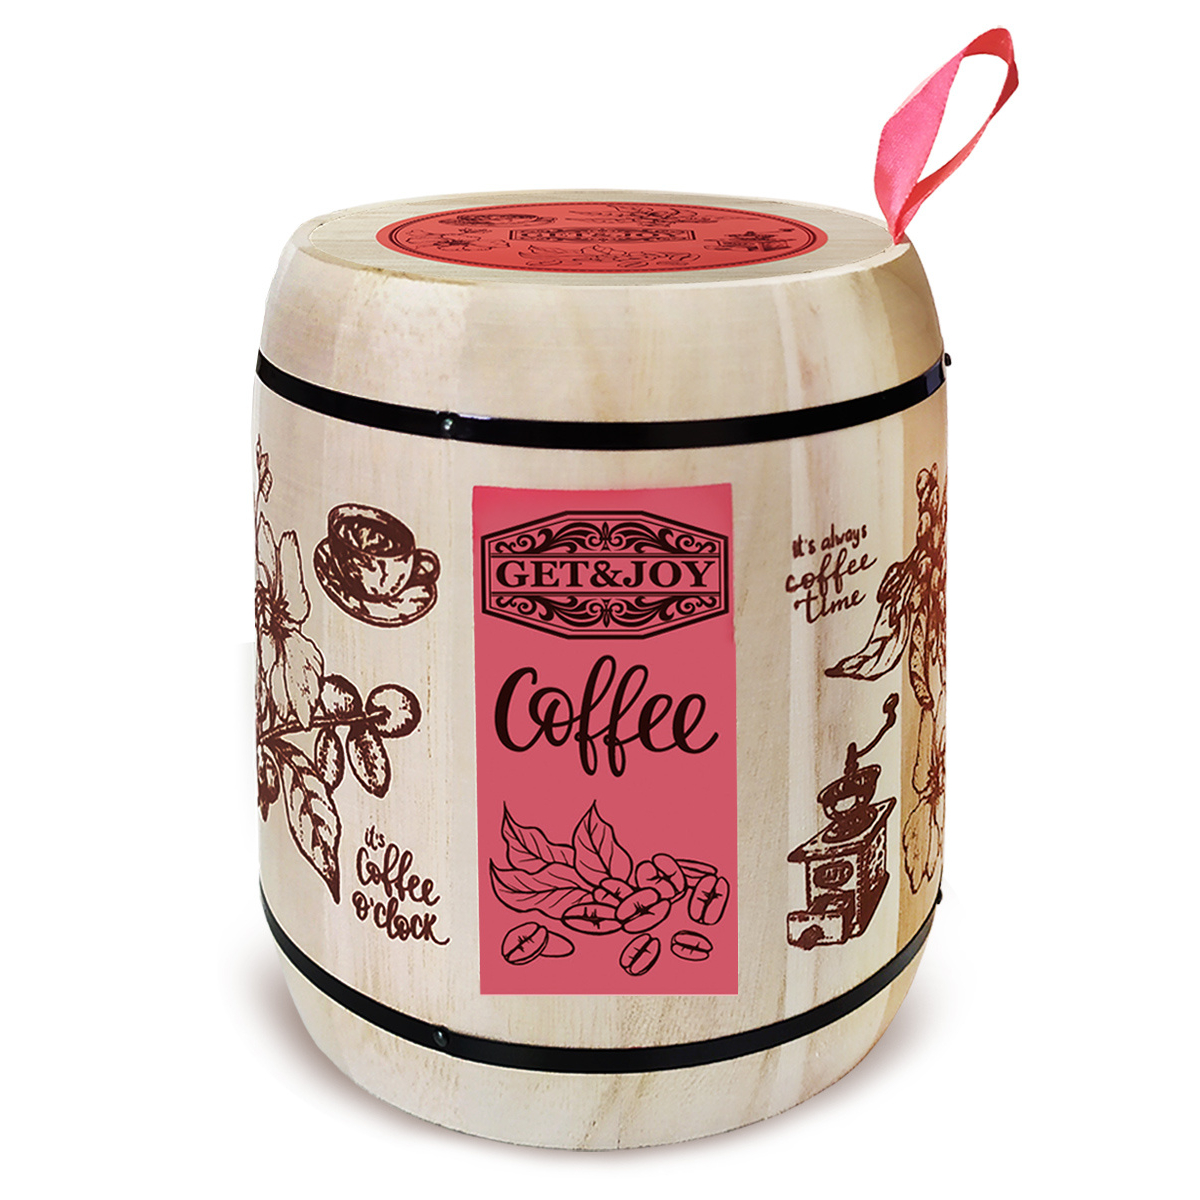 Кофе молотый Get&Joy Ирландский крем, розовый бочонок, 150 г кофе молотый oro caffe ground prezioso 250 г